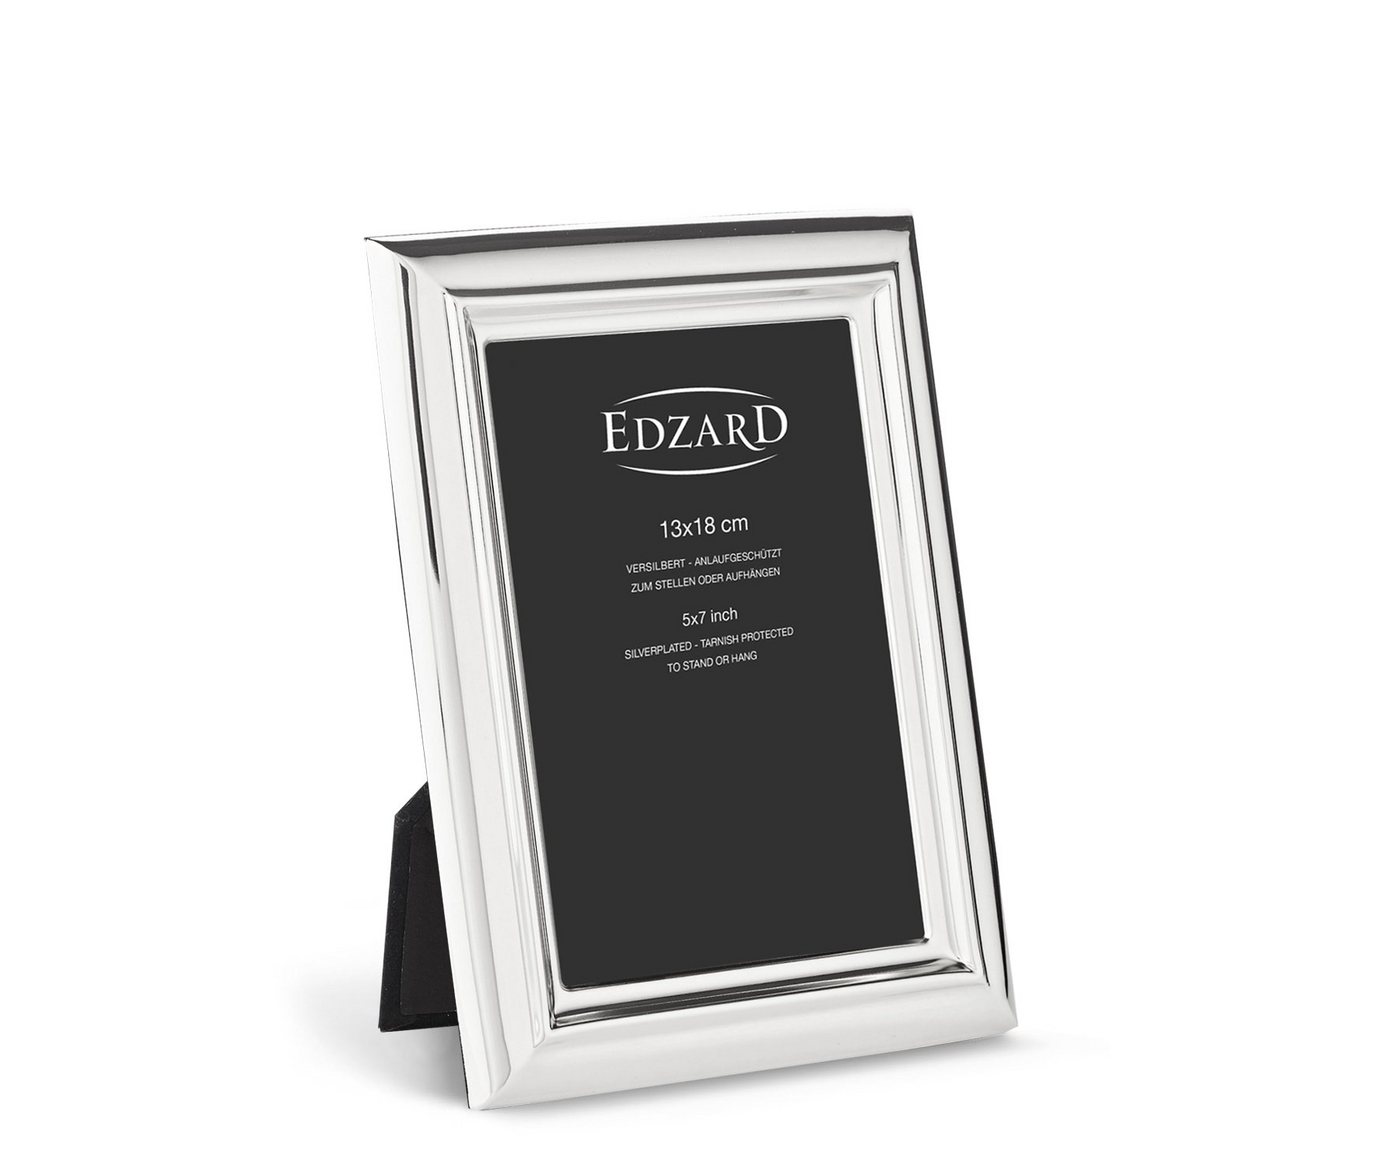 EDZARD Bilderrahmen Florenz, versilbert und anlaufgeschützt, für 13x18 cm Bilder - Fotorahmen von EDZARD